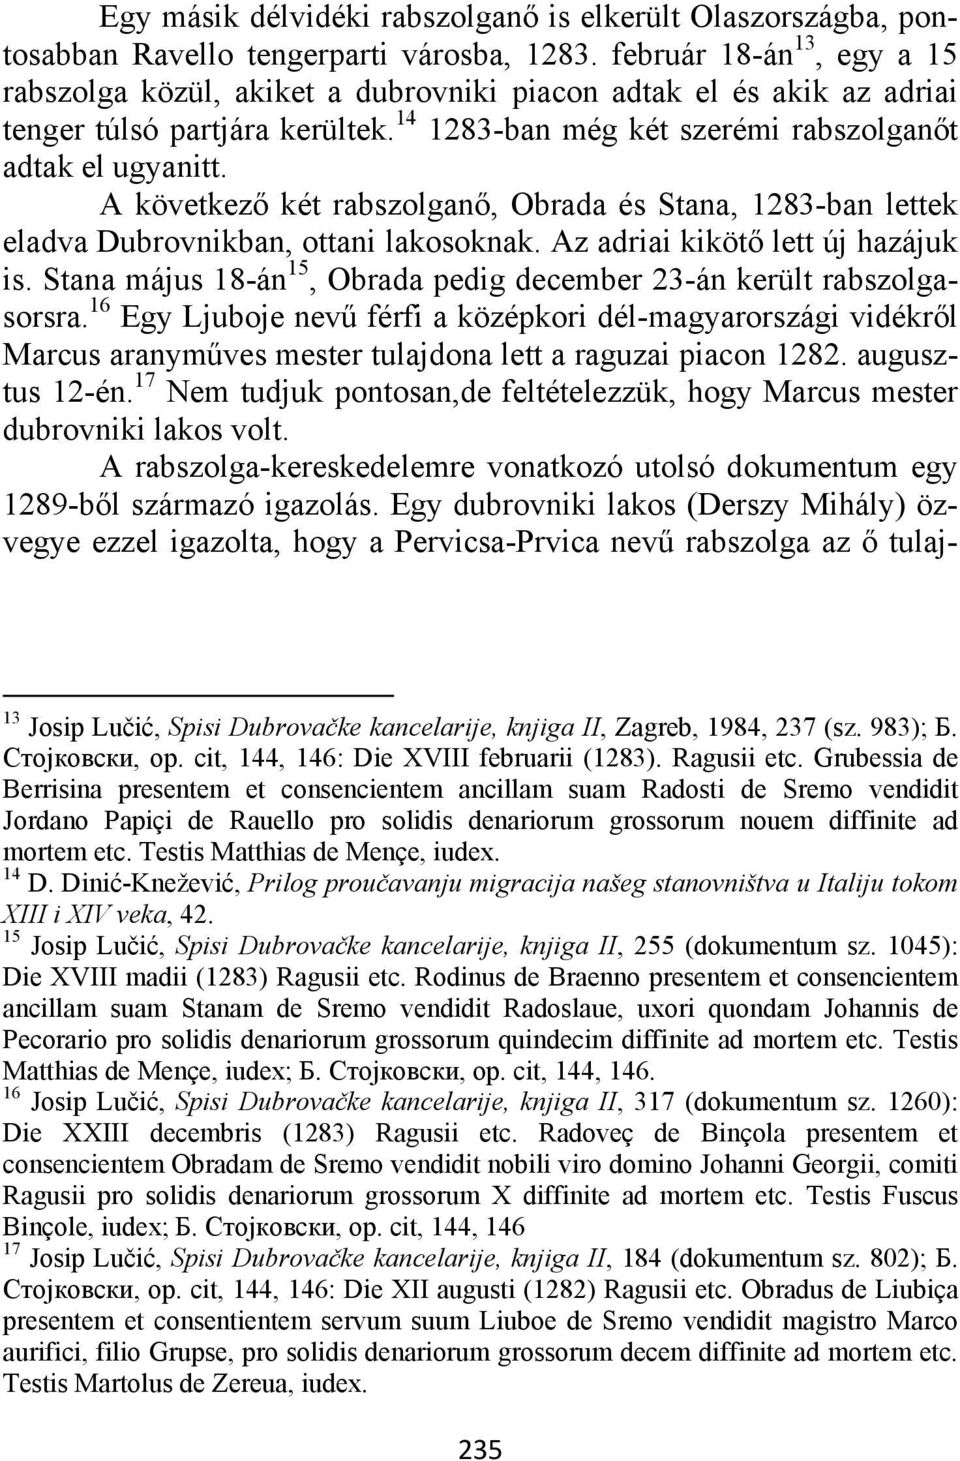 A következő két rabszolganő, Obrada és Stana, 1283-ban lettek eladva Dubrovnikban, ottani lakosoknak. Az adriai kikötő lett új hazájuk is.